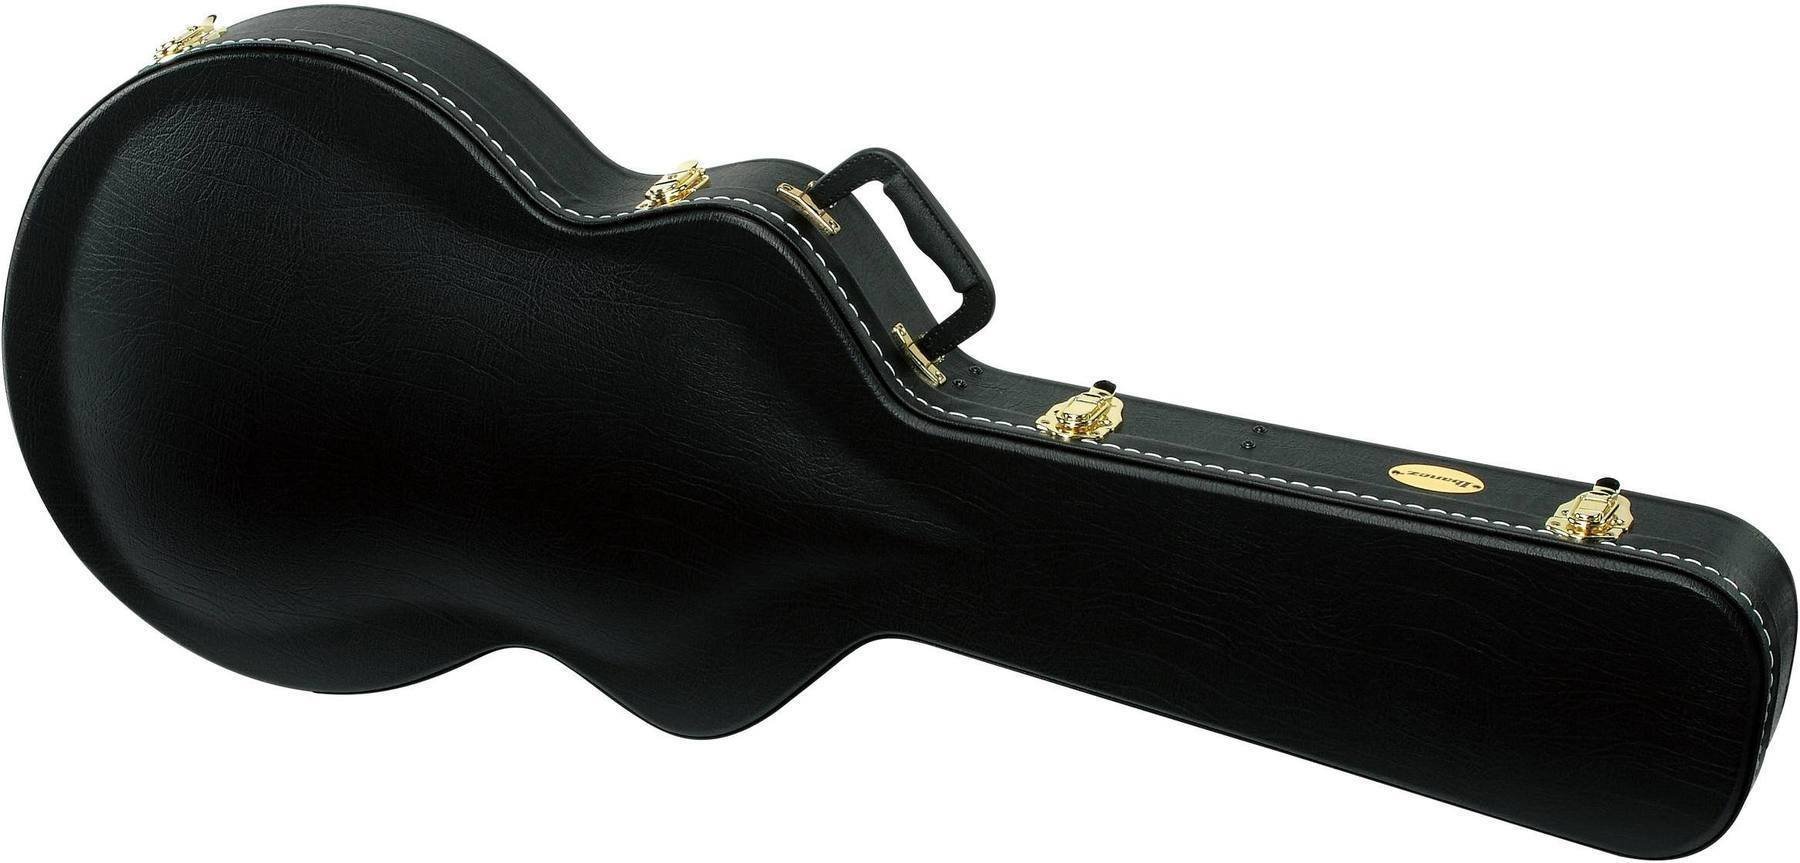 Koffer für akustische Gitarre Ibanez AGS-C Koffer für akustische Gitarre